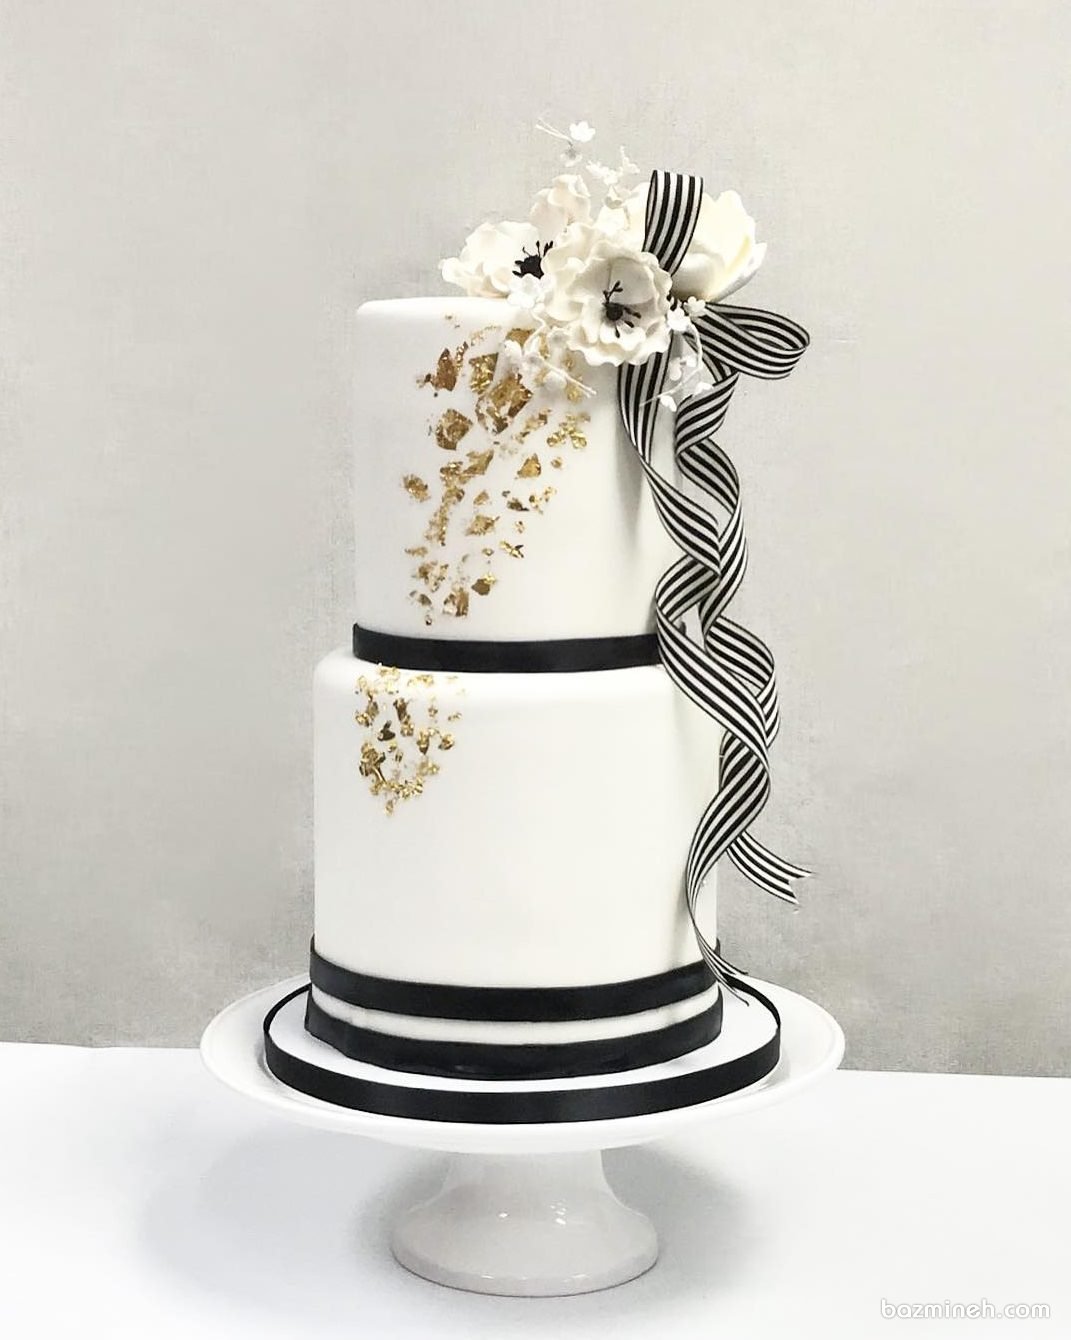 کیک ساده و شیک جشن تولد بزرگسال یا سالگرد ازدواج با تم سفید مشکی